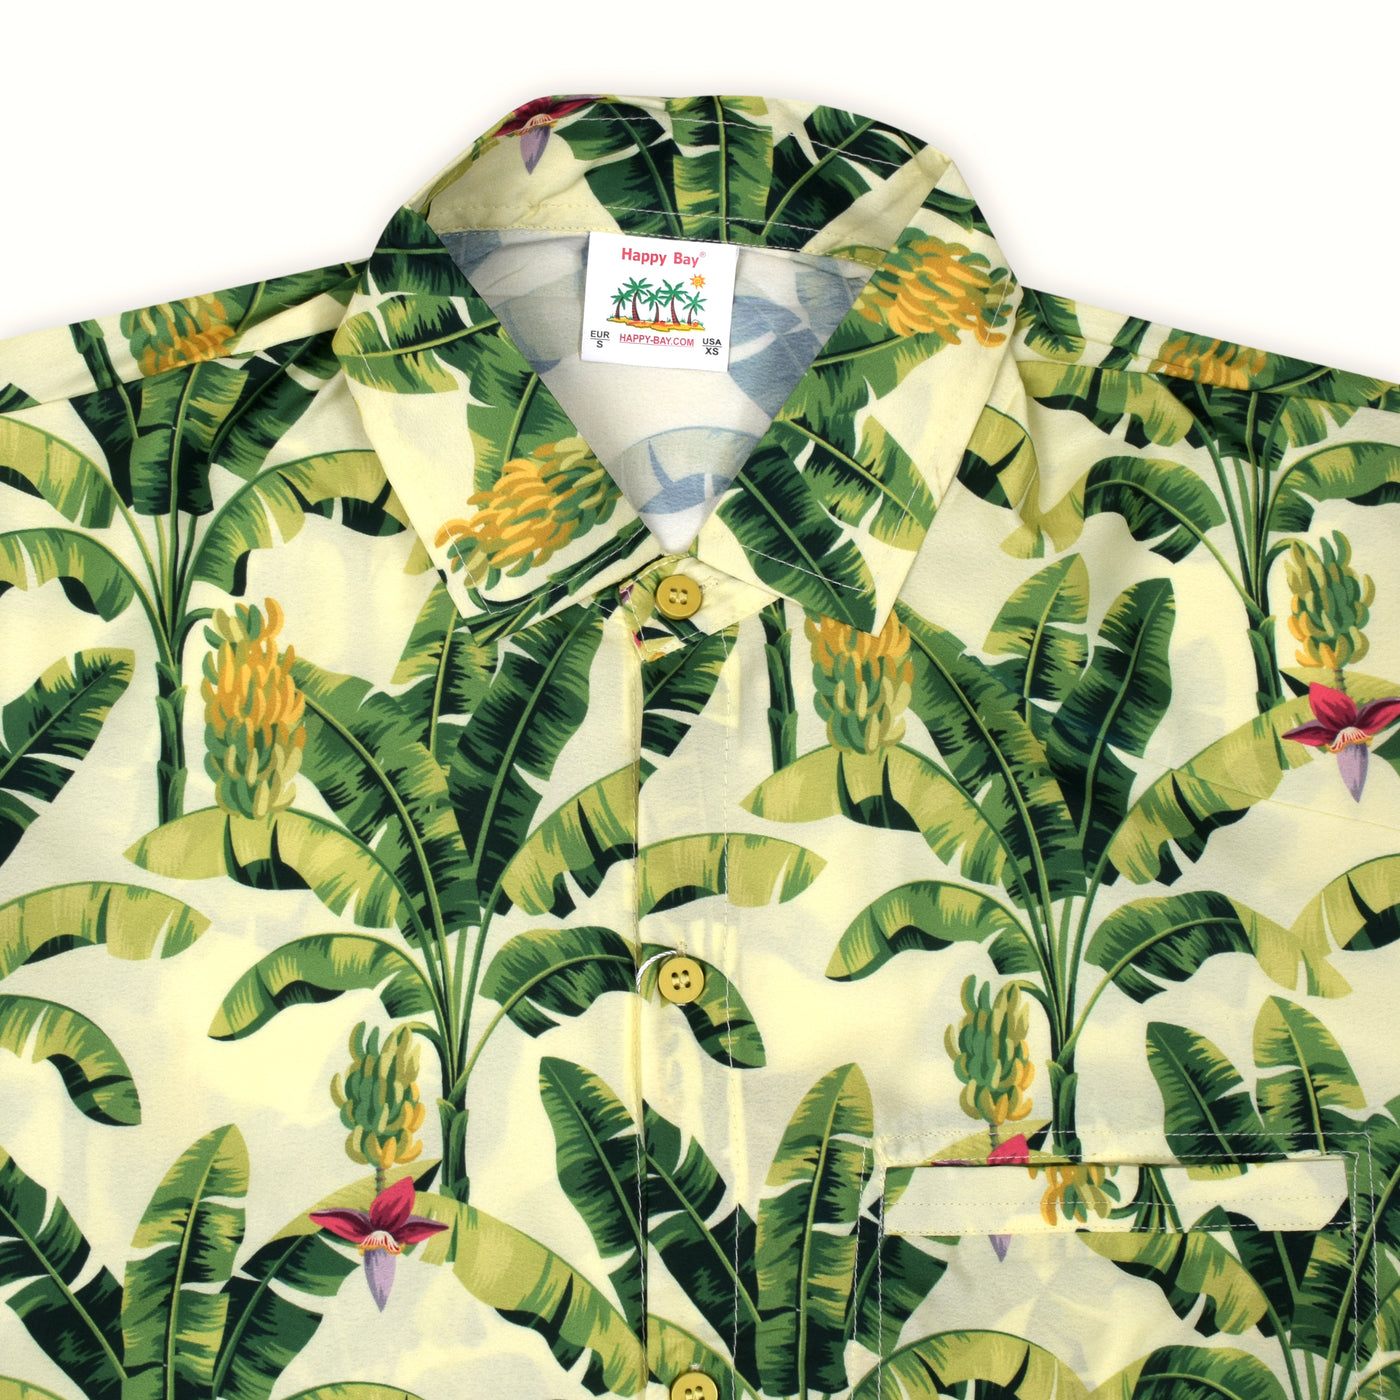 Camisa hawaiana Shake like a leaf